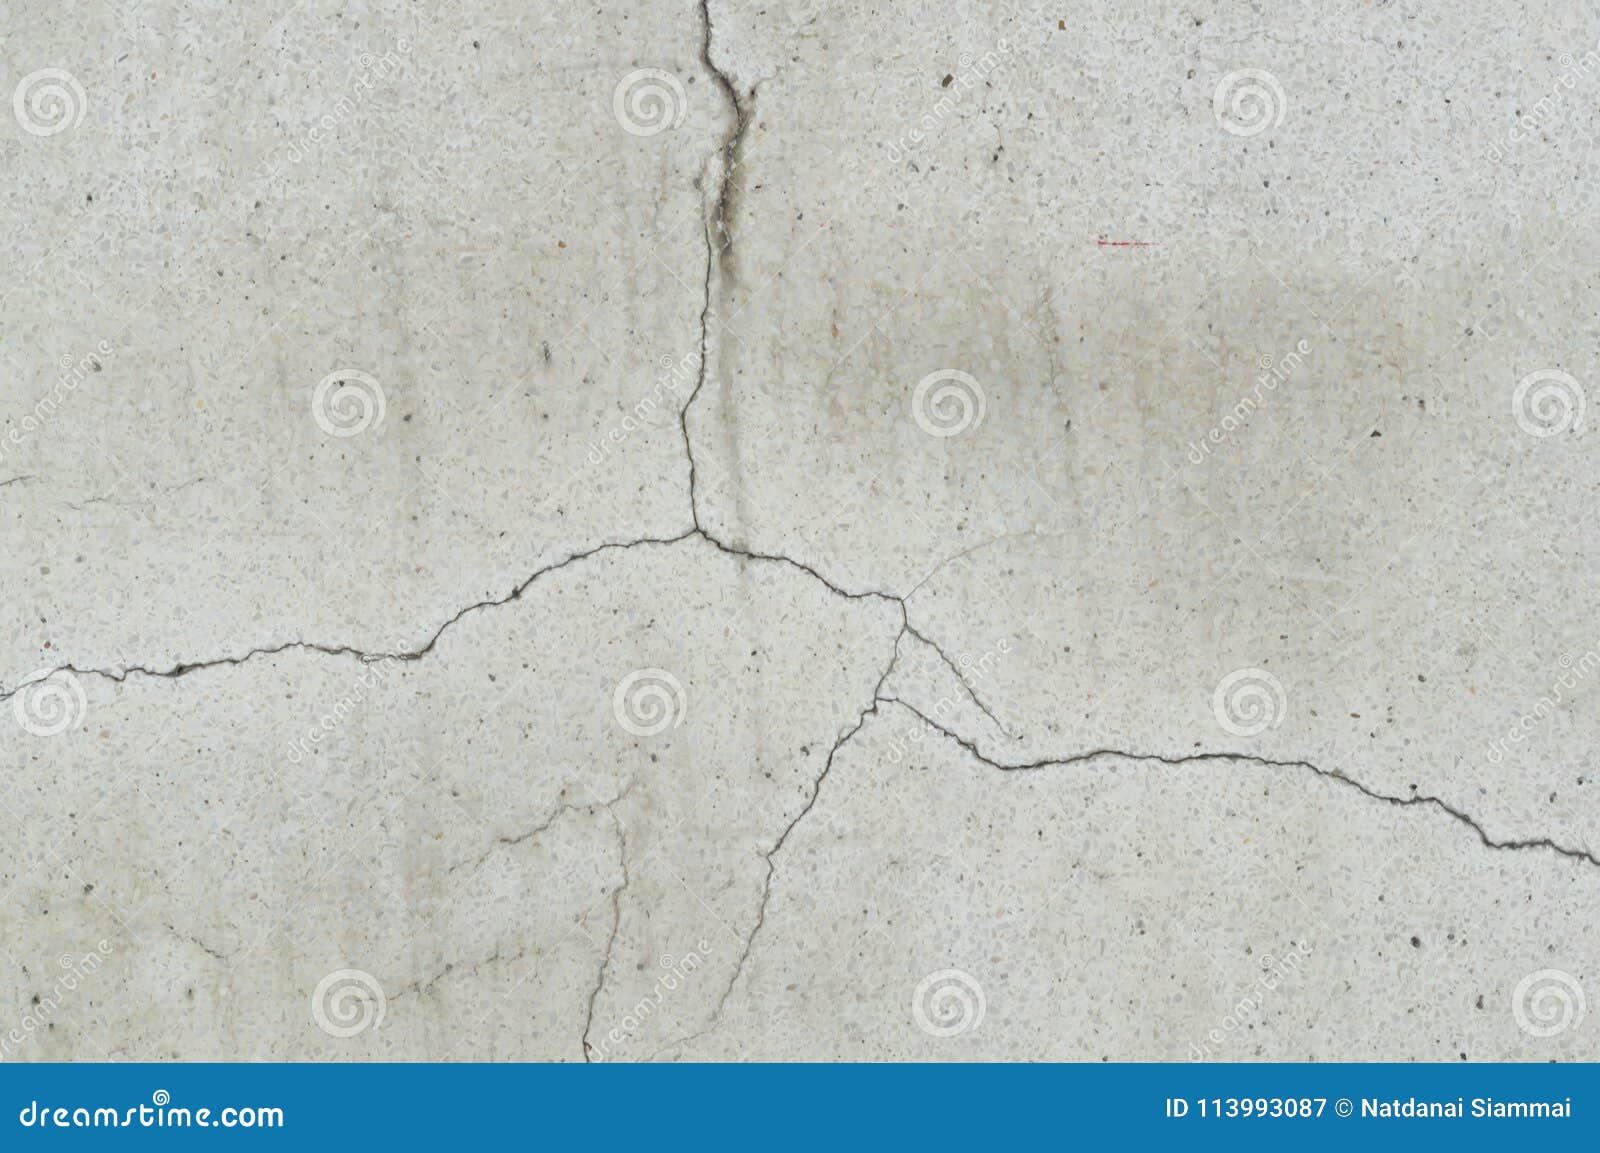 Strange Cracking Concrete Wall Texture Background Stock Image - Image